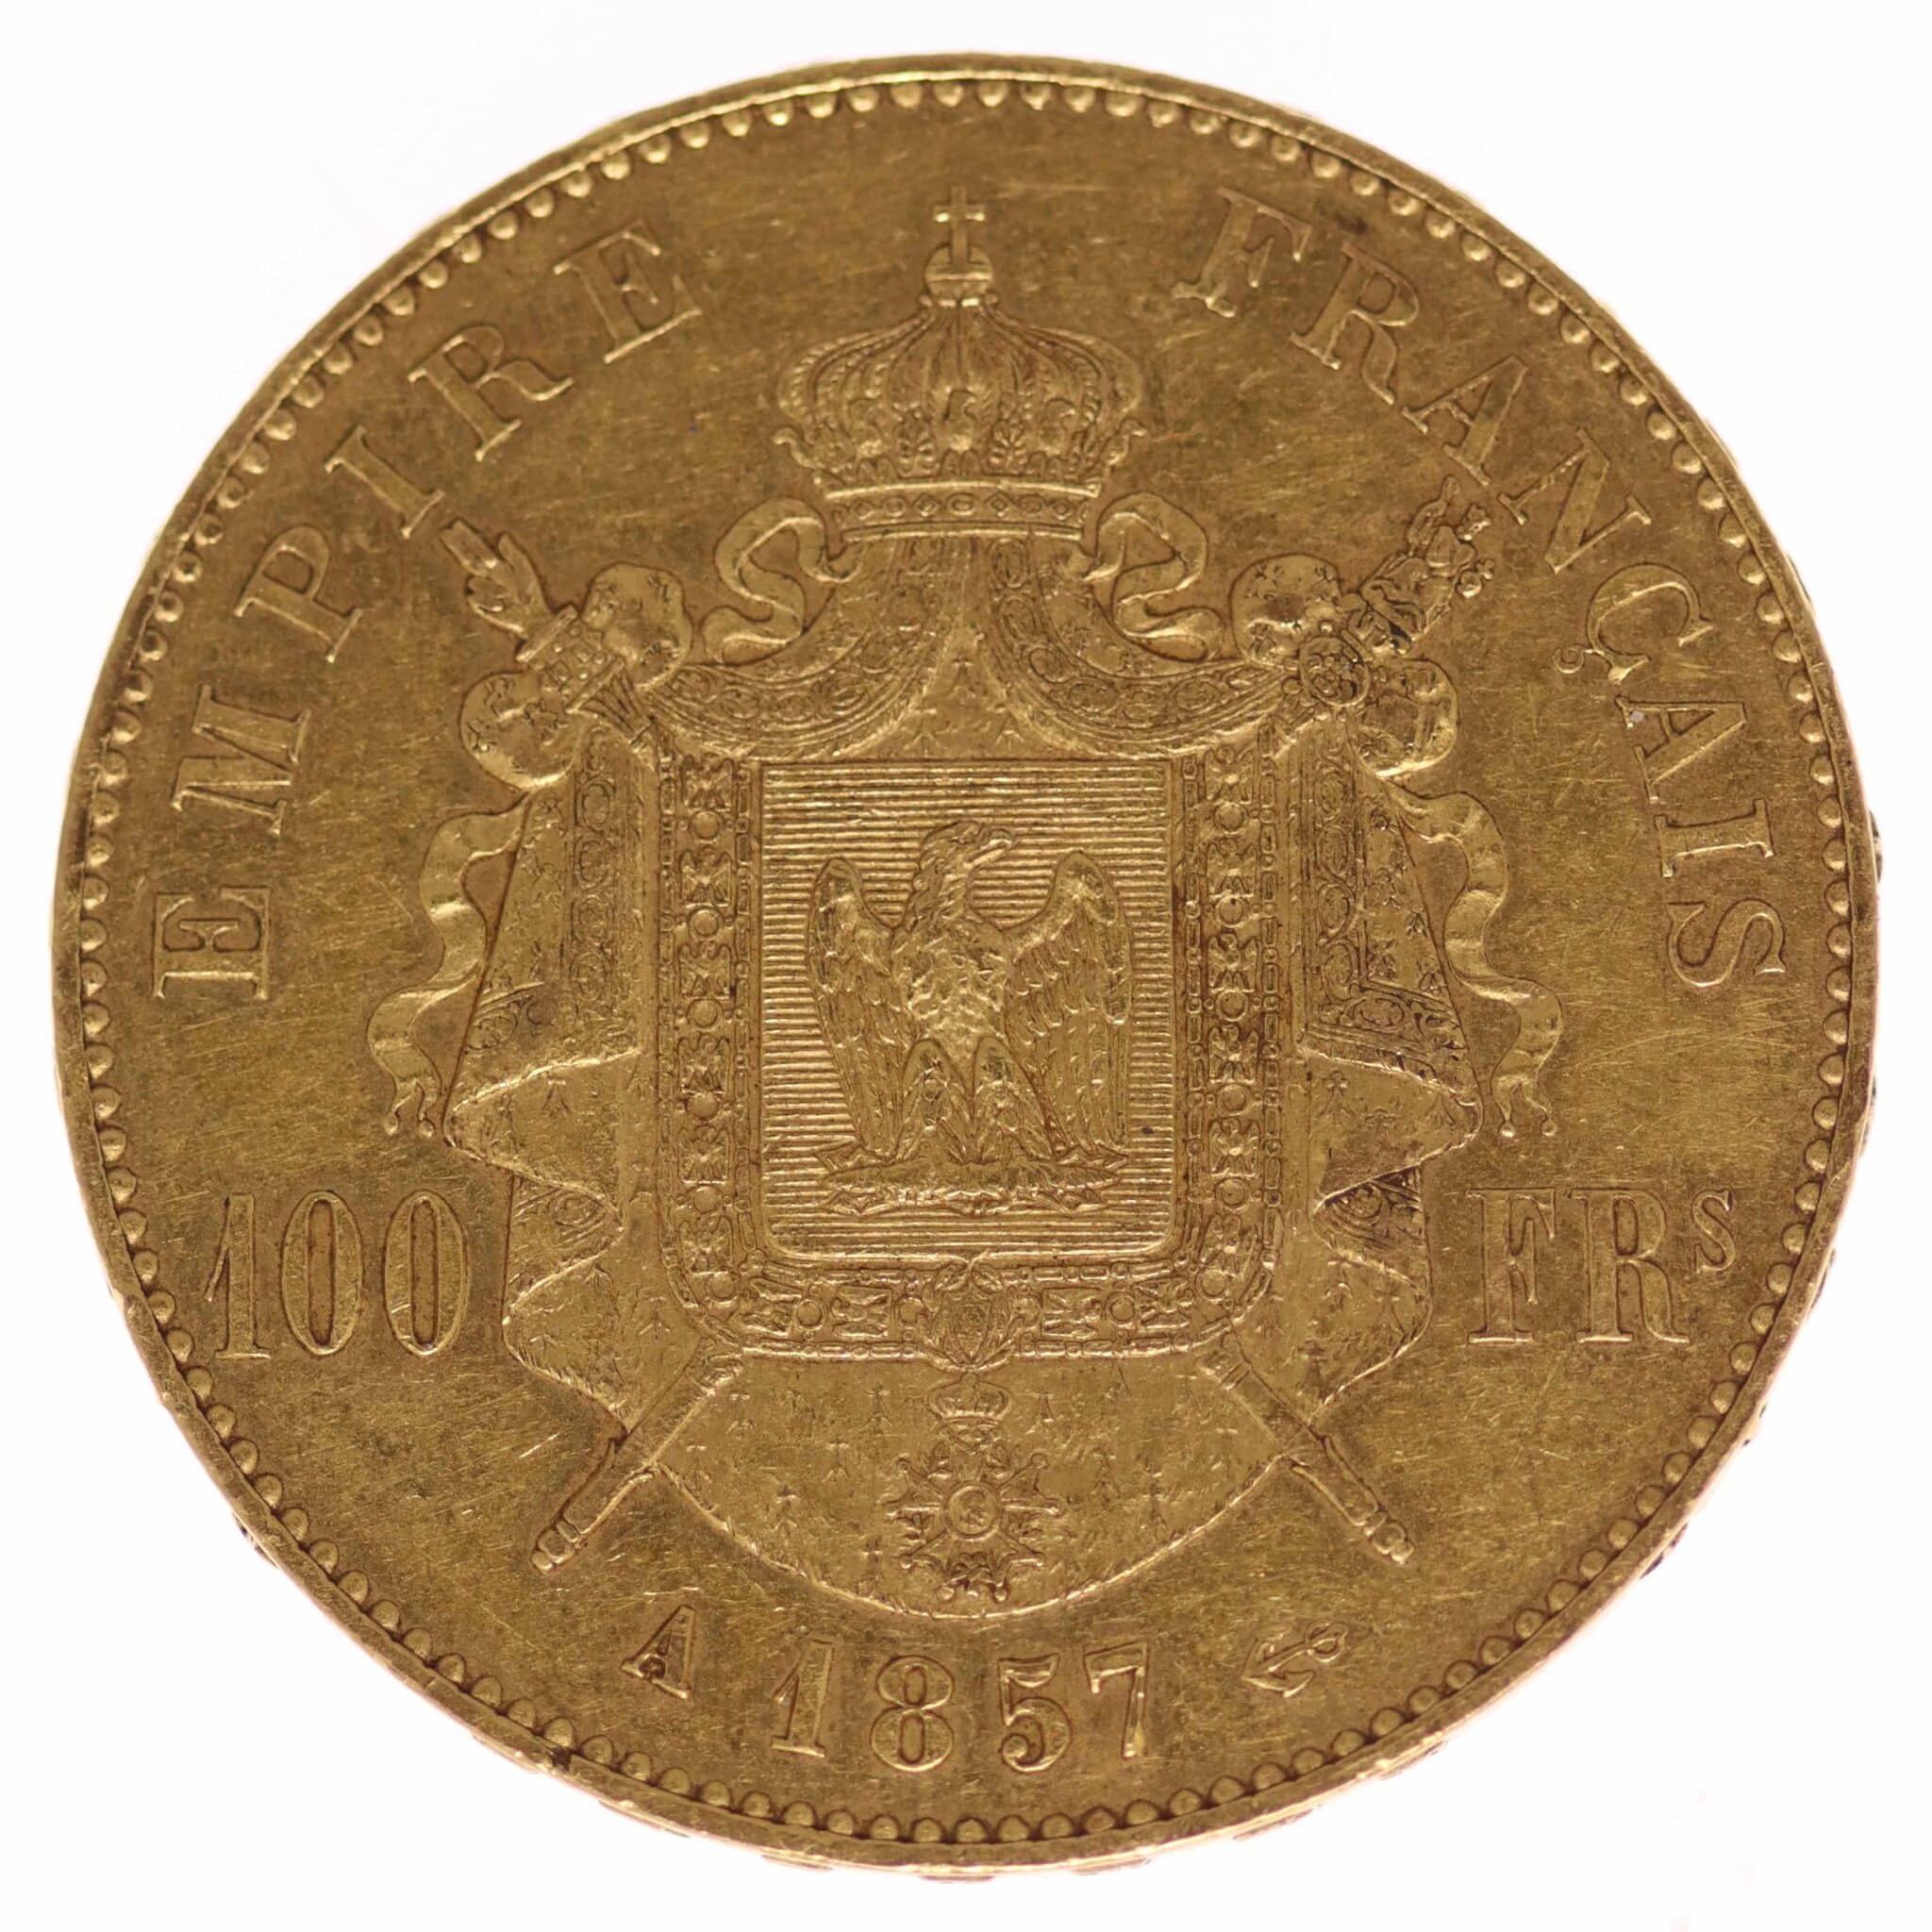 frankreich - Frankreich Napoleon III. 100 Francs 1857 A